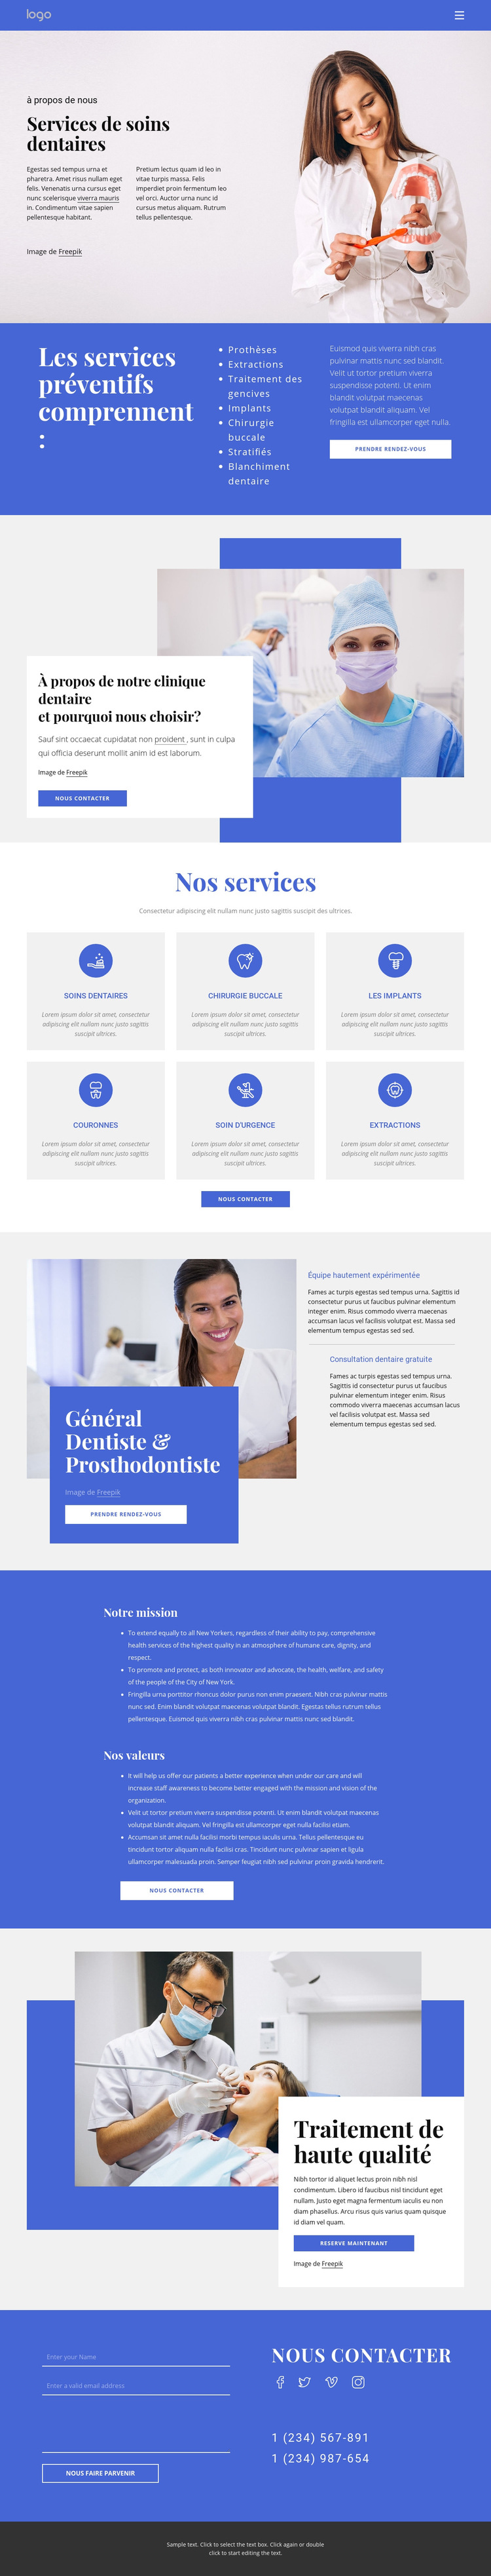 Dentiste et prosthodontie Modèle de site Web